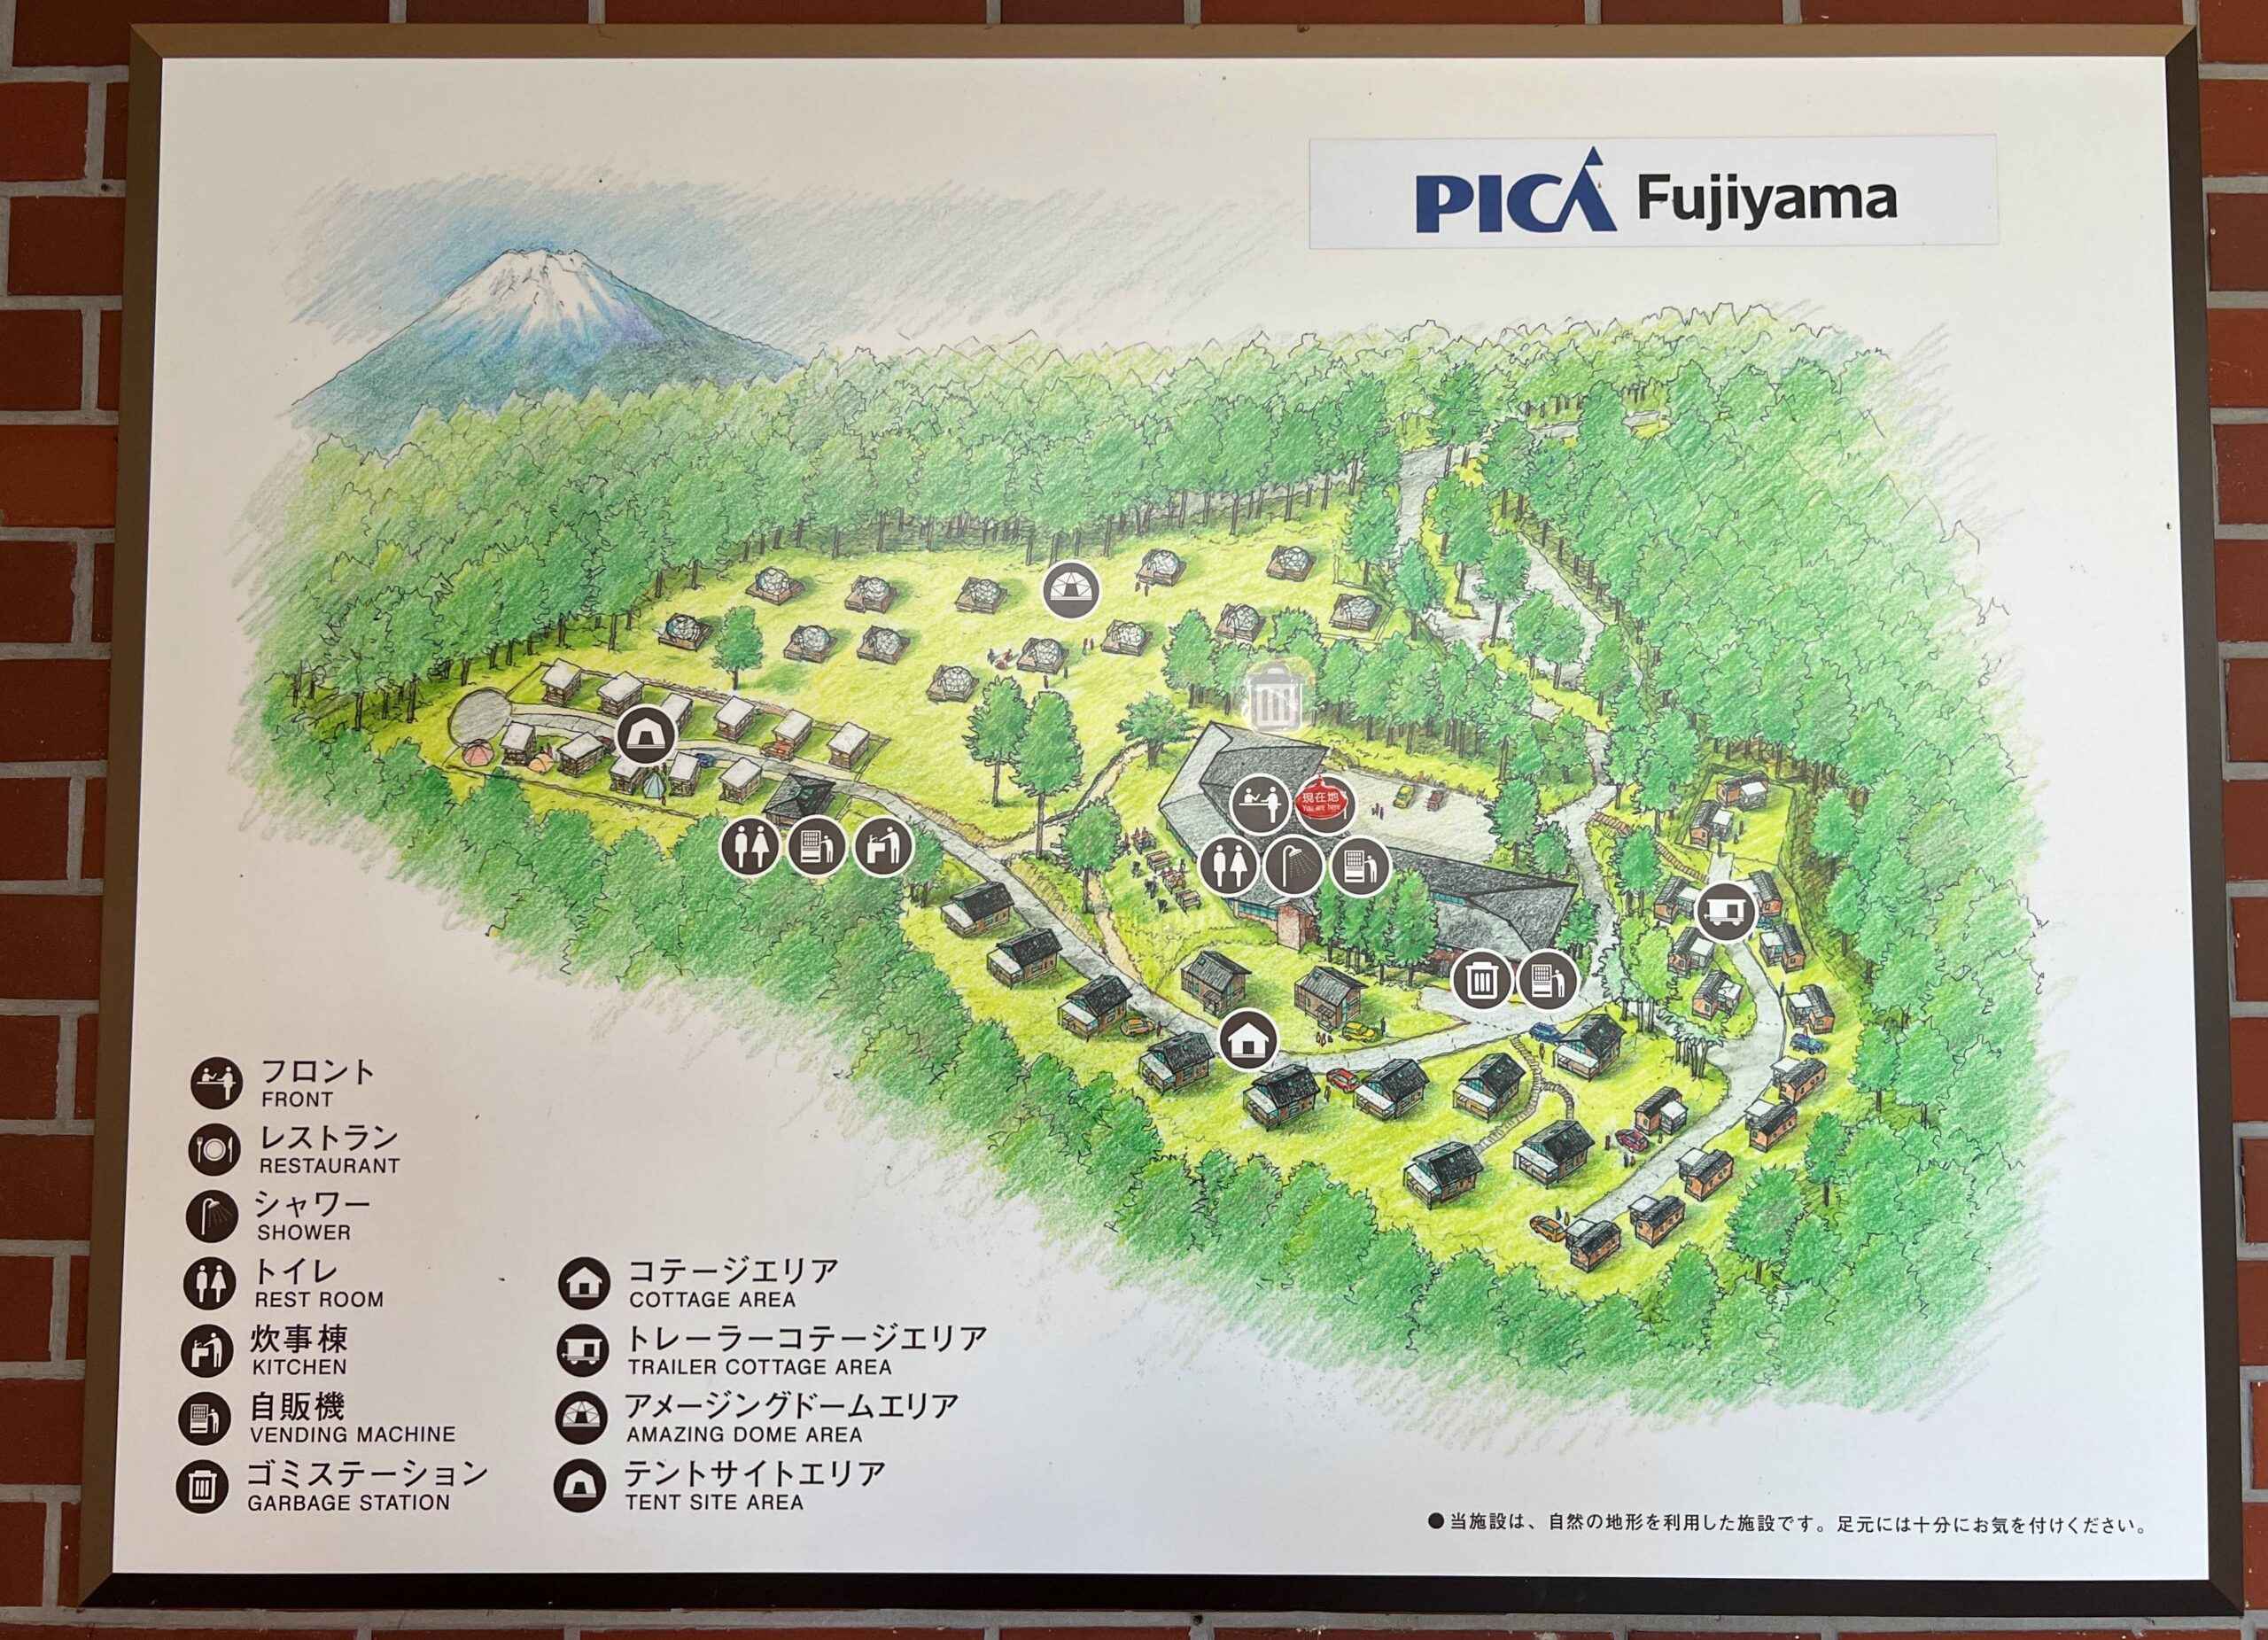 獨享富士山的夕暮、日出與新鮮氣息！第一次日本豪華露營就與富士山零距離｜日本山梨縣富士山皮卡渡假村PICA Fujiyama 半圓形透明帳篷一泊二食方案 @。CJ夫人。